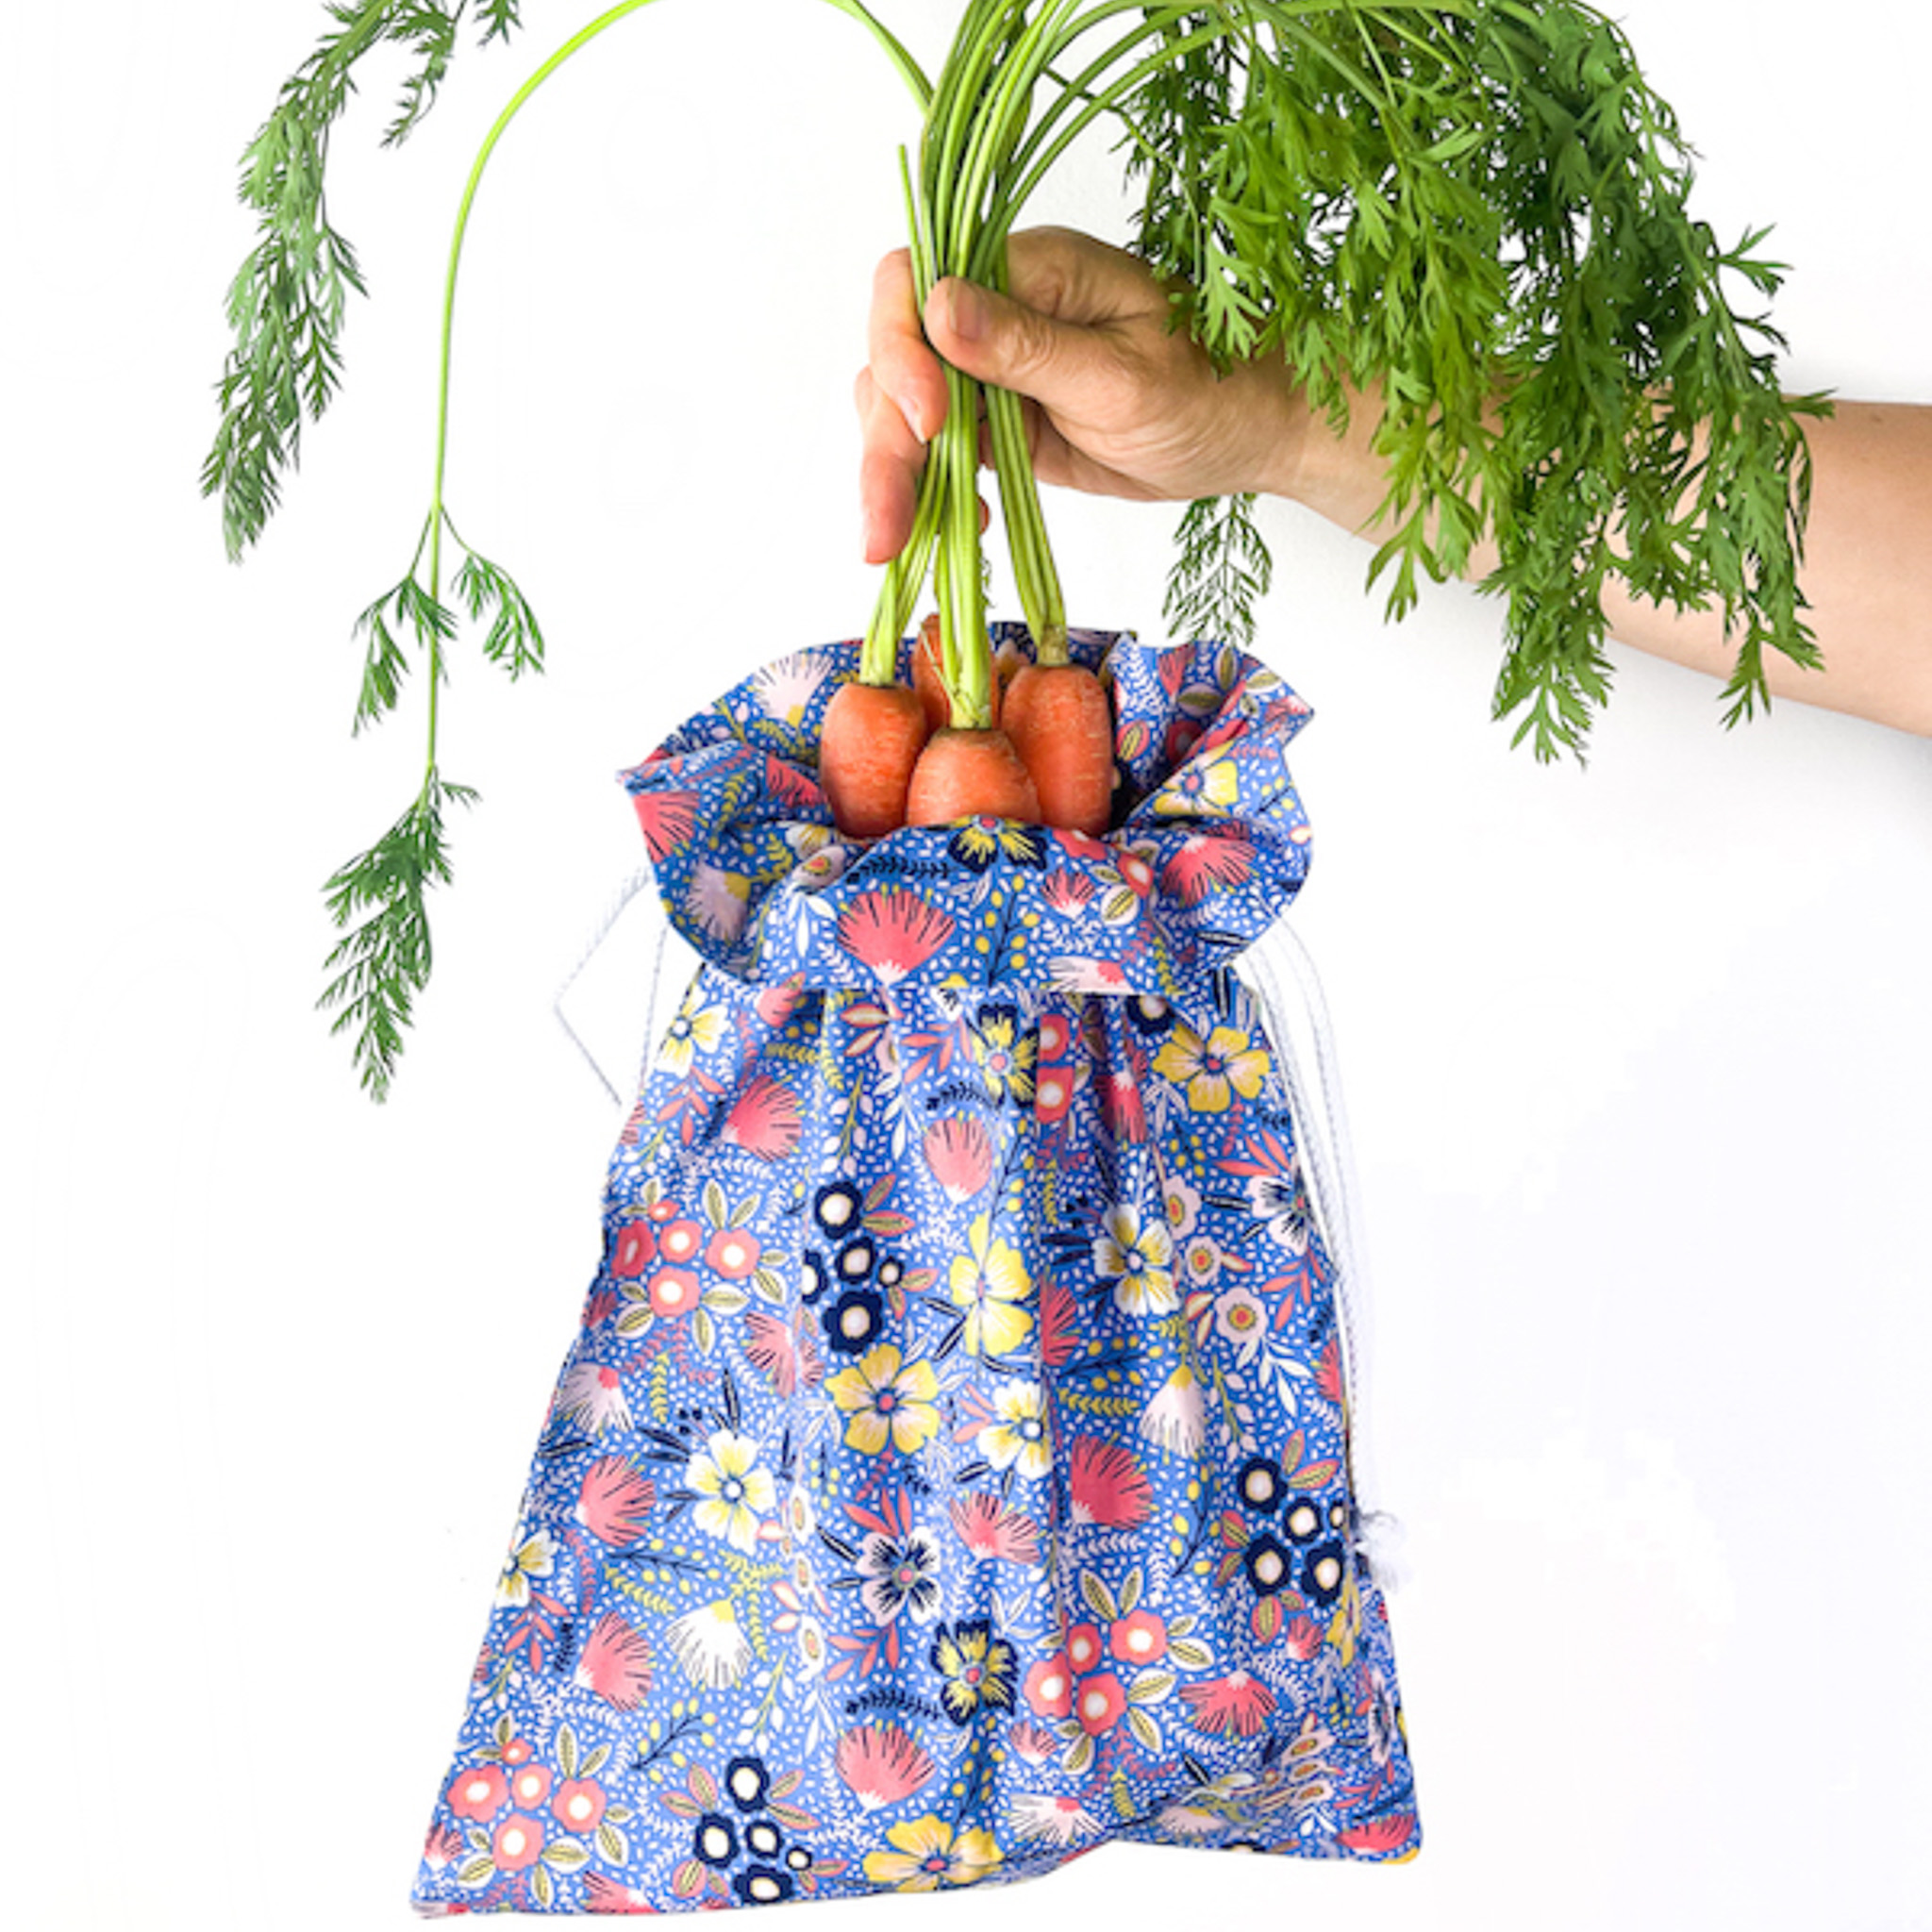 Der Veggie Bag ersetzt Plastik Gemüsebeutel in Supermarkt perfekt.